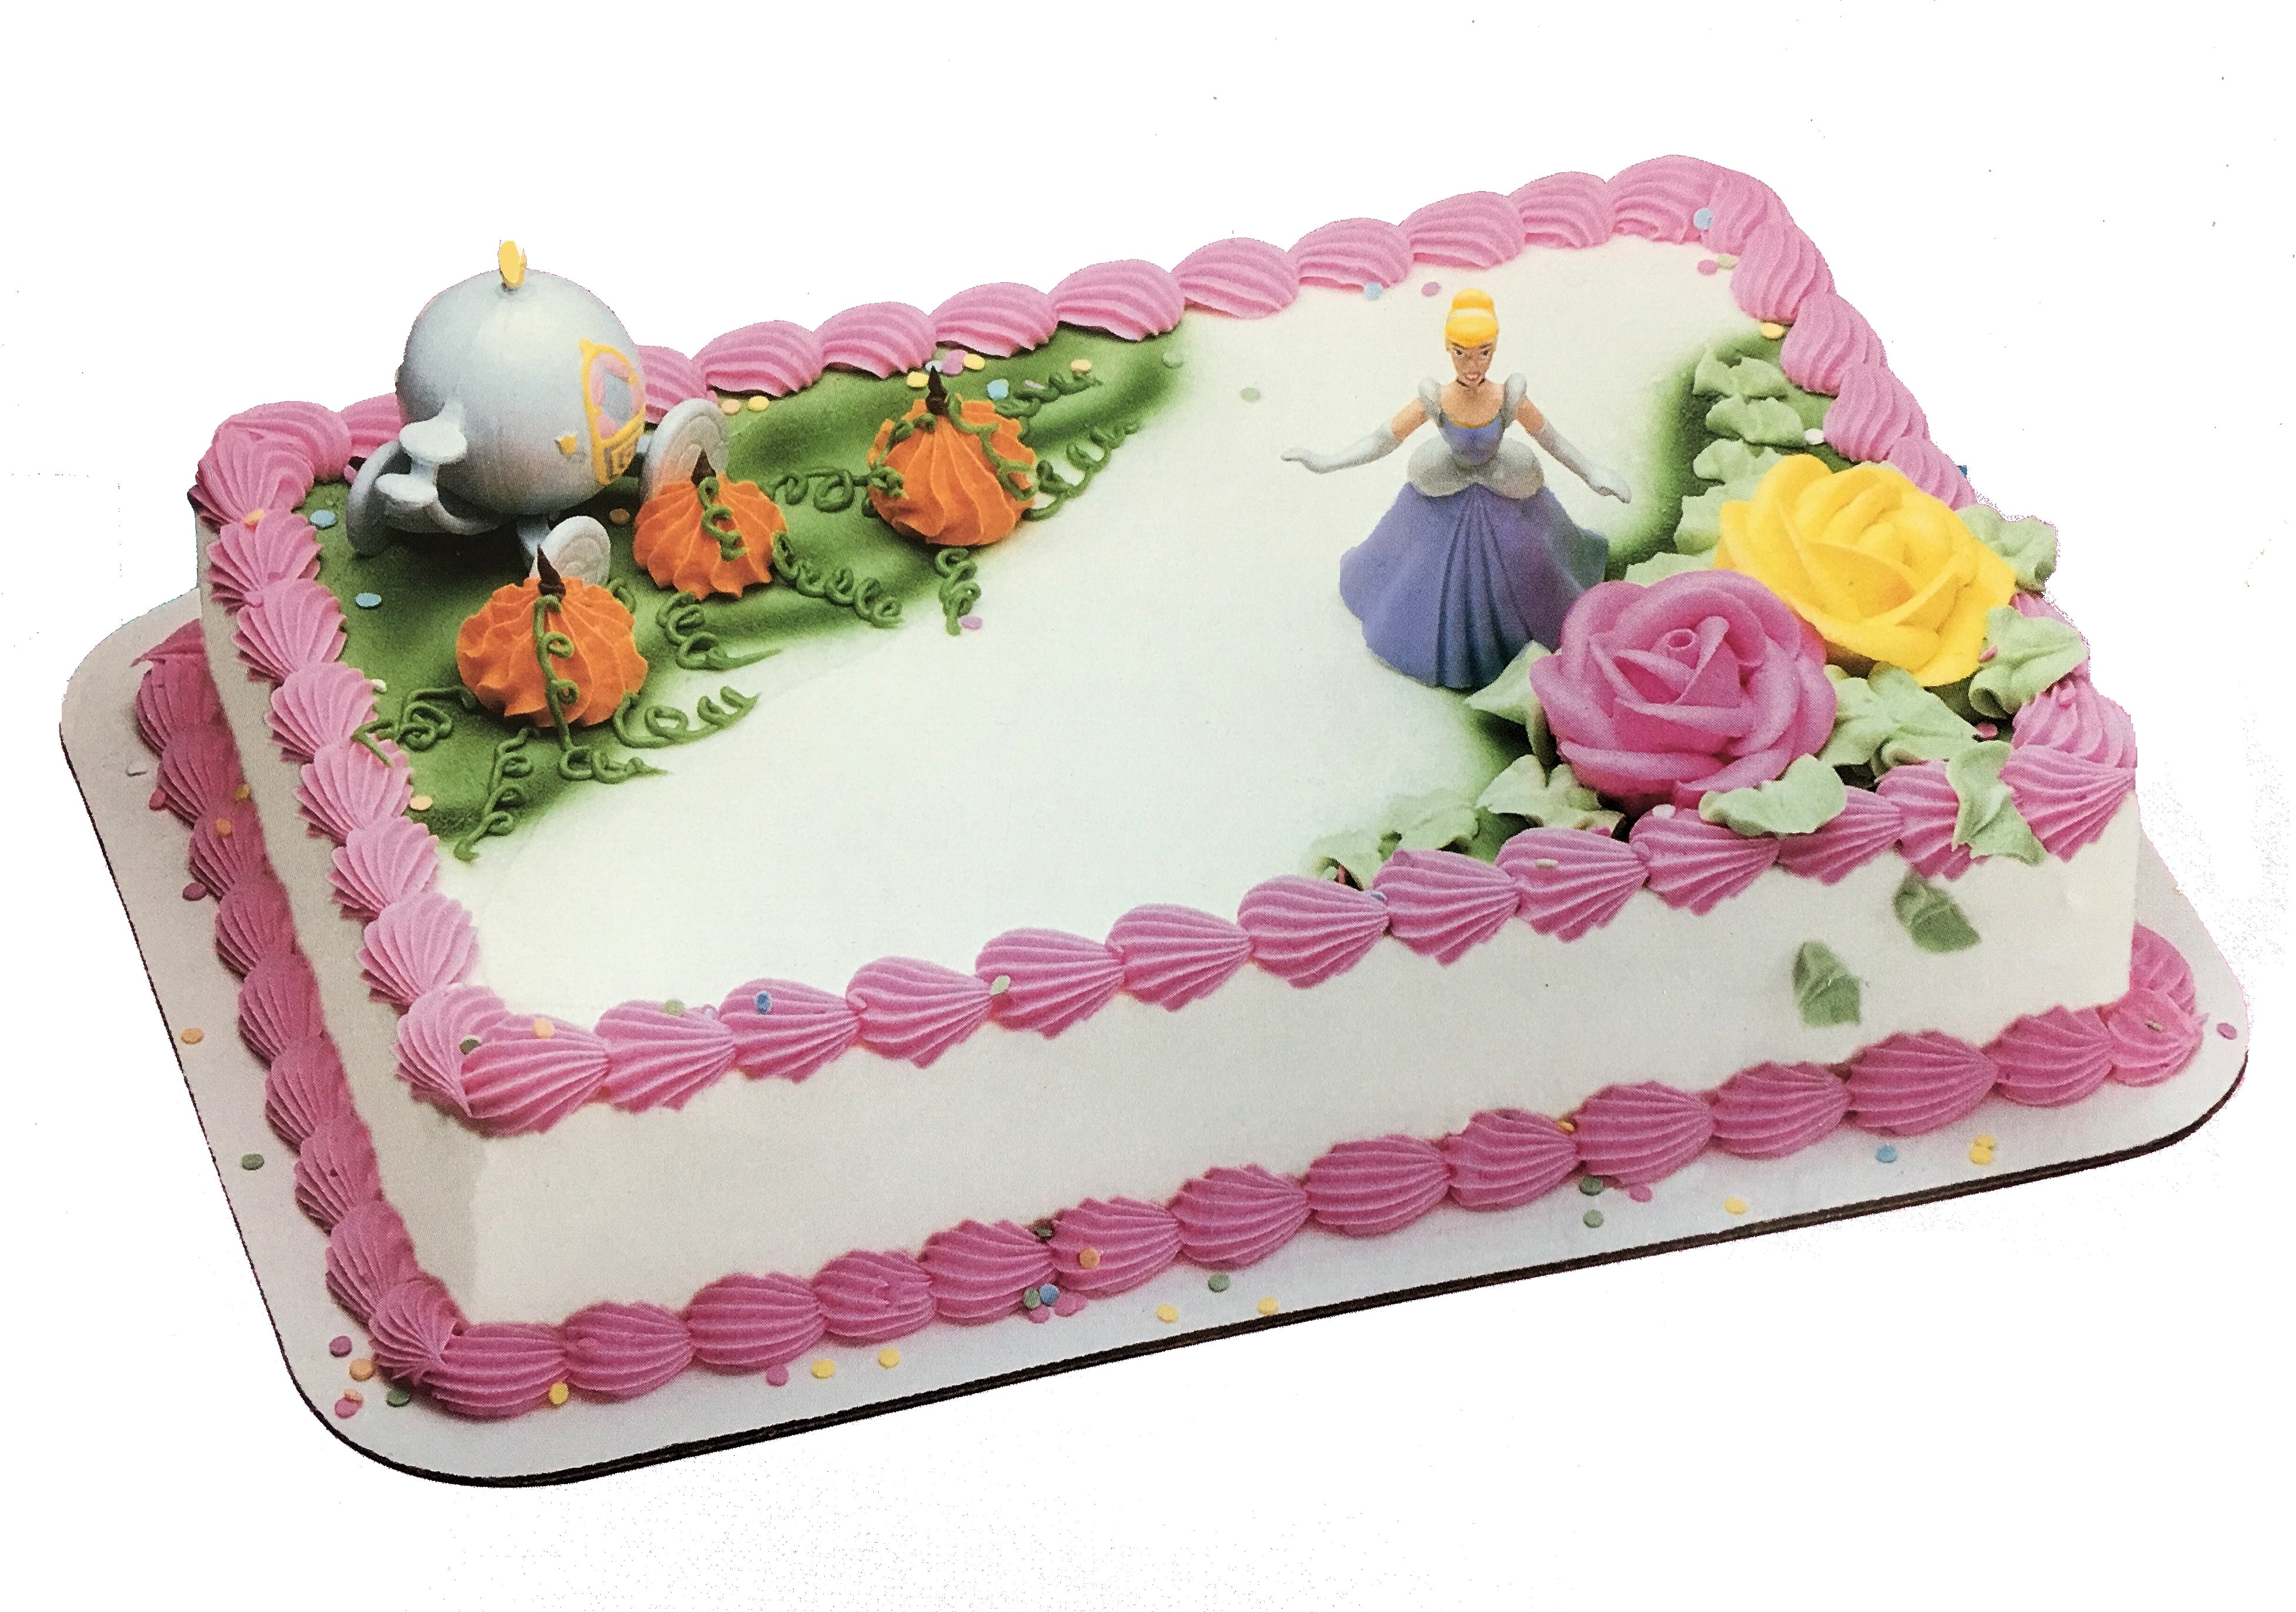 Castle Cake | Princess birthday cake, Disney princess birthday cakes, Disney  princess cake